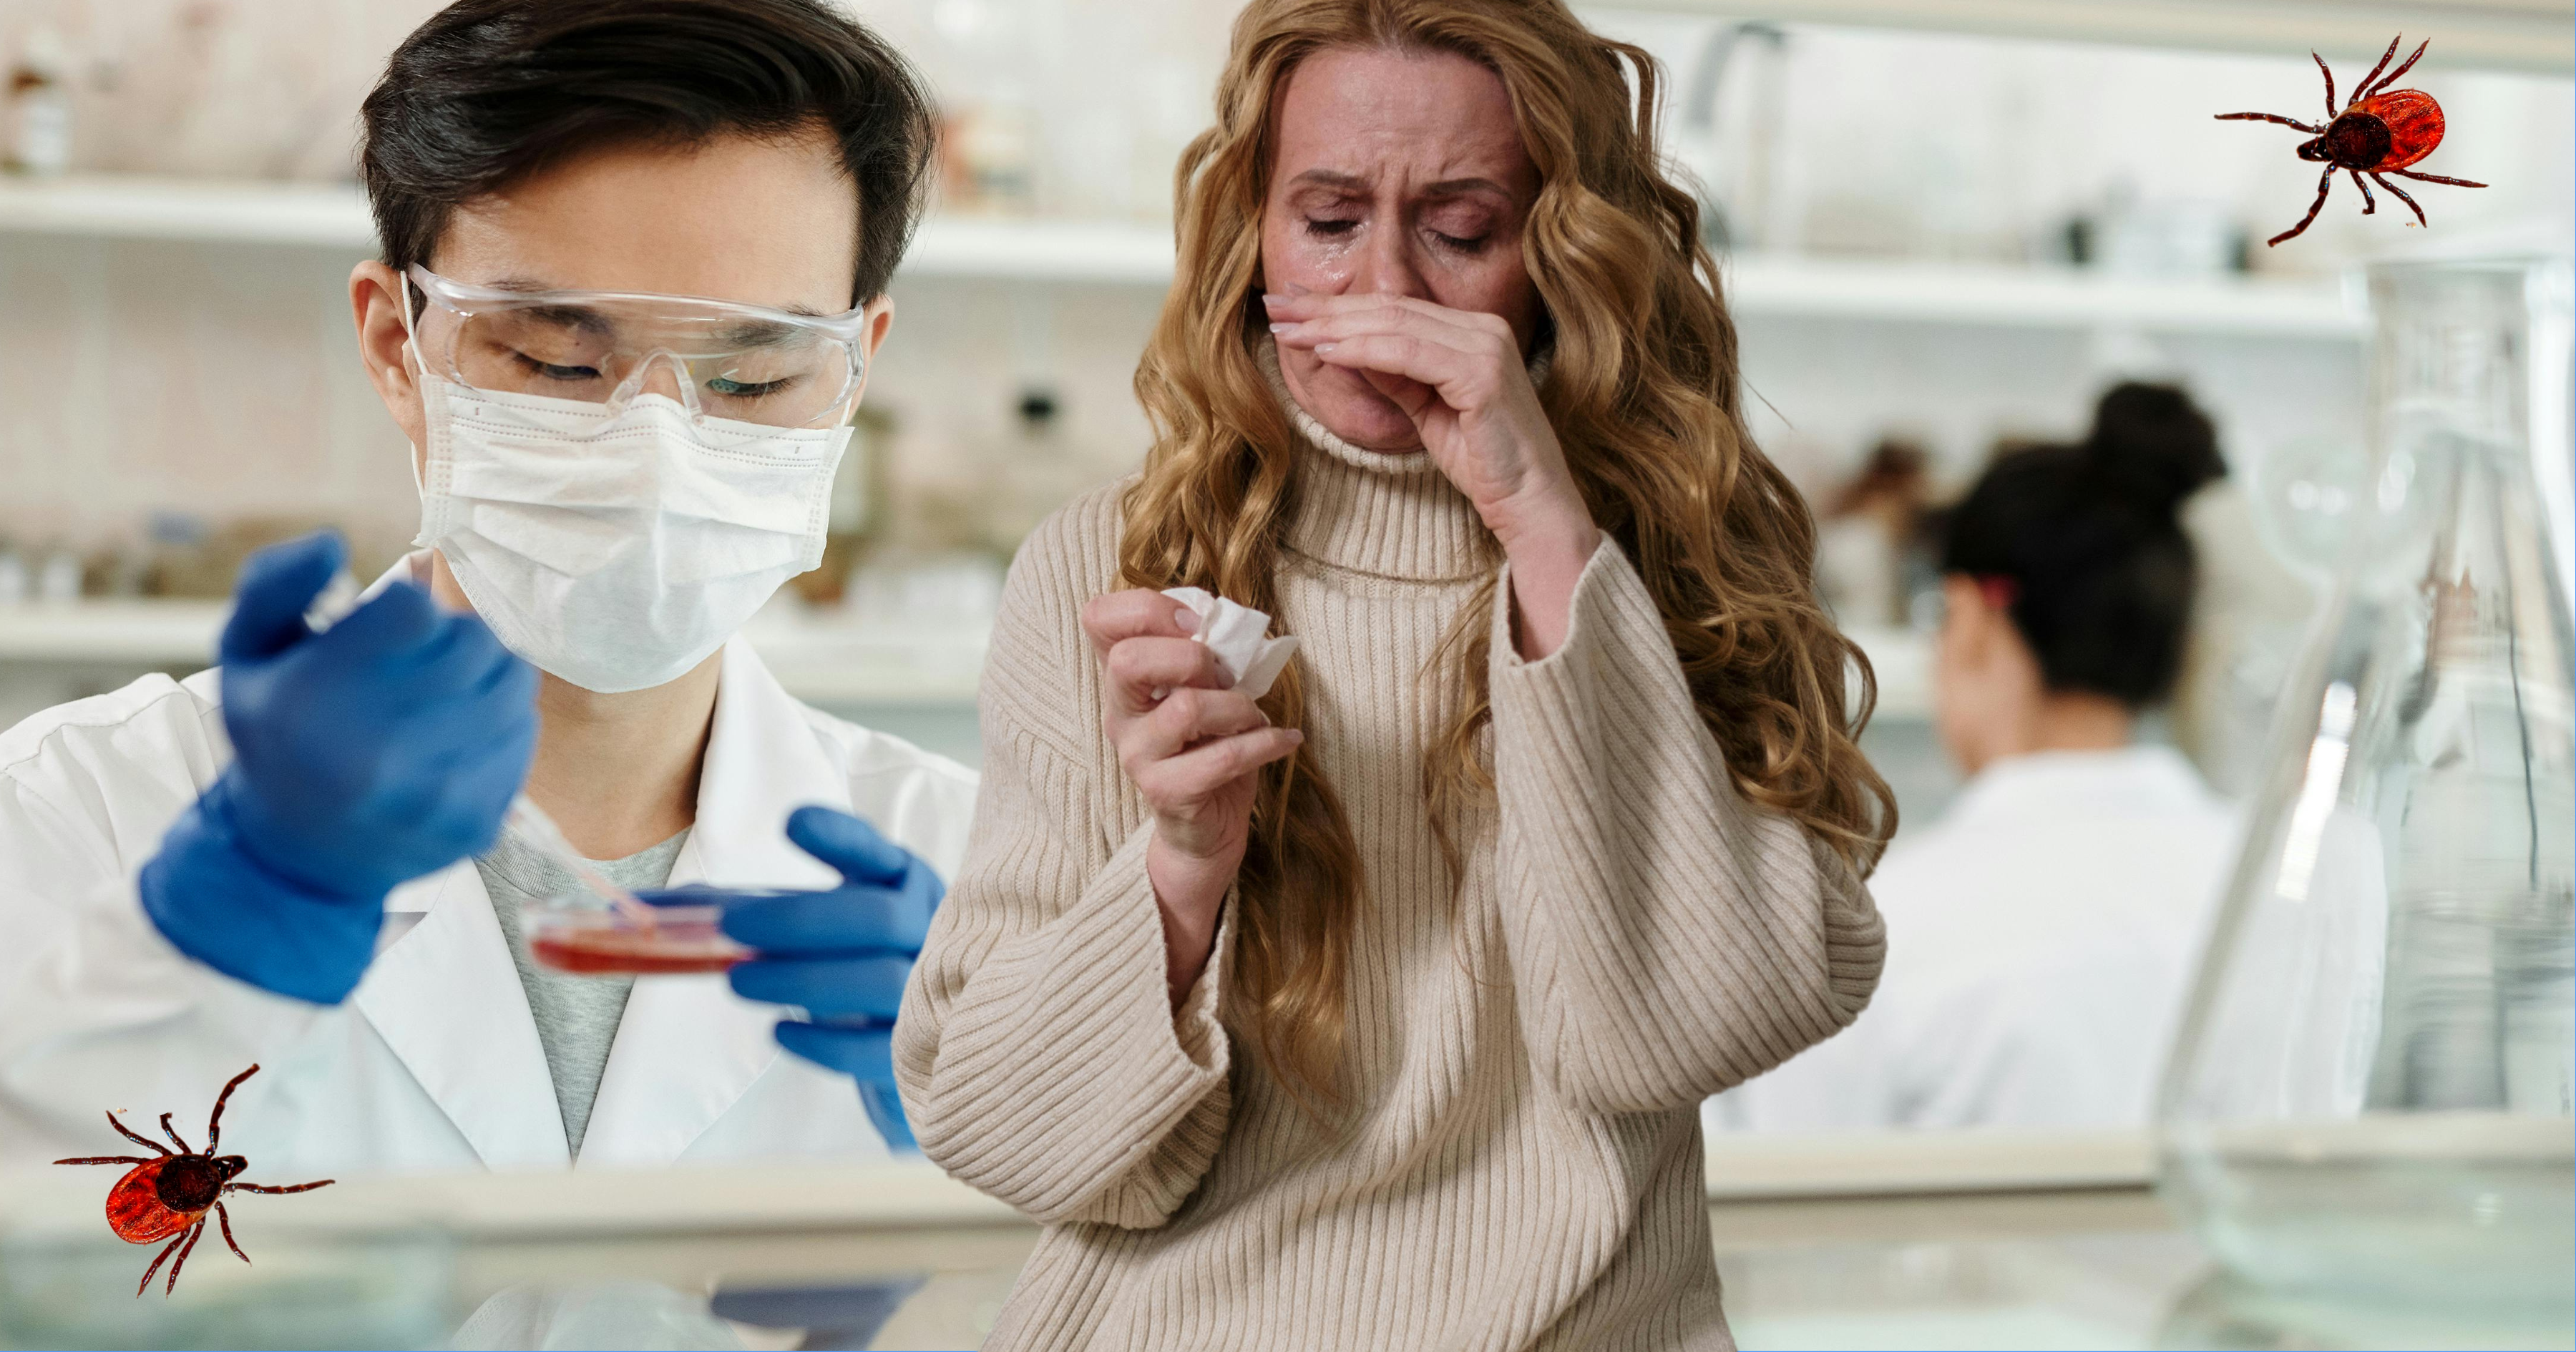 Kobieta zasłania sobie nos przed kichnięciem. W tle widać laboratorium, gdzie mężczyzna w goglach i maseeczce pobiera próbkę ze szklanego naczynia